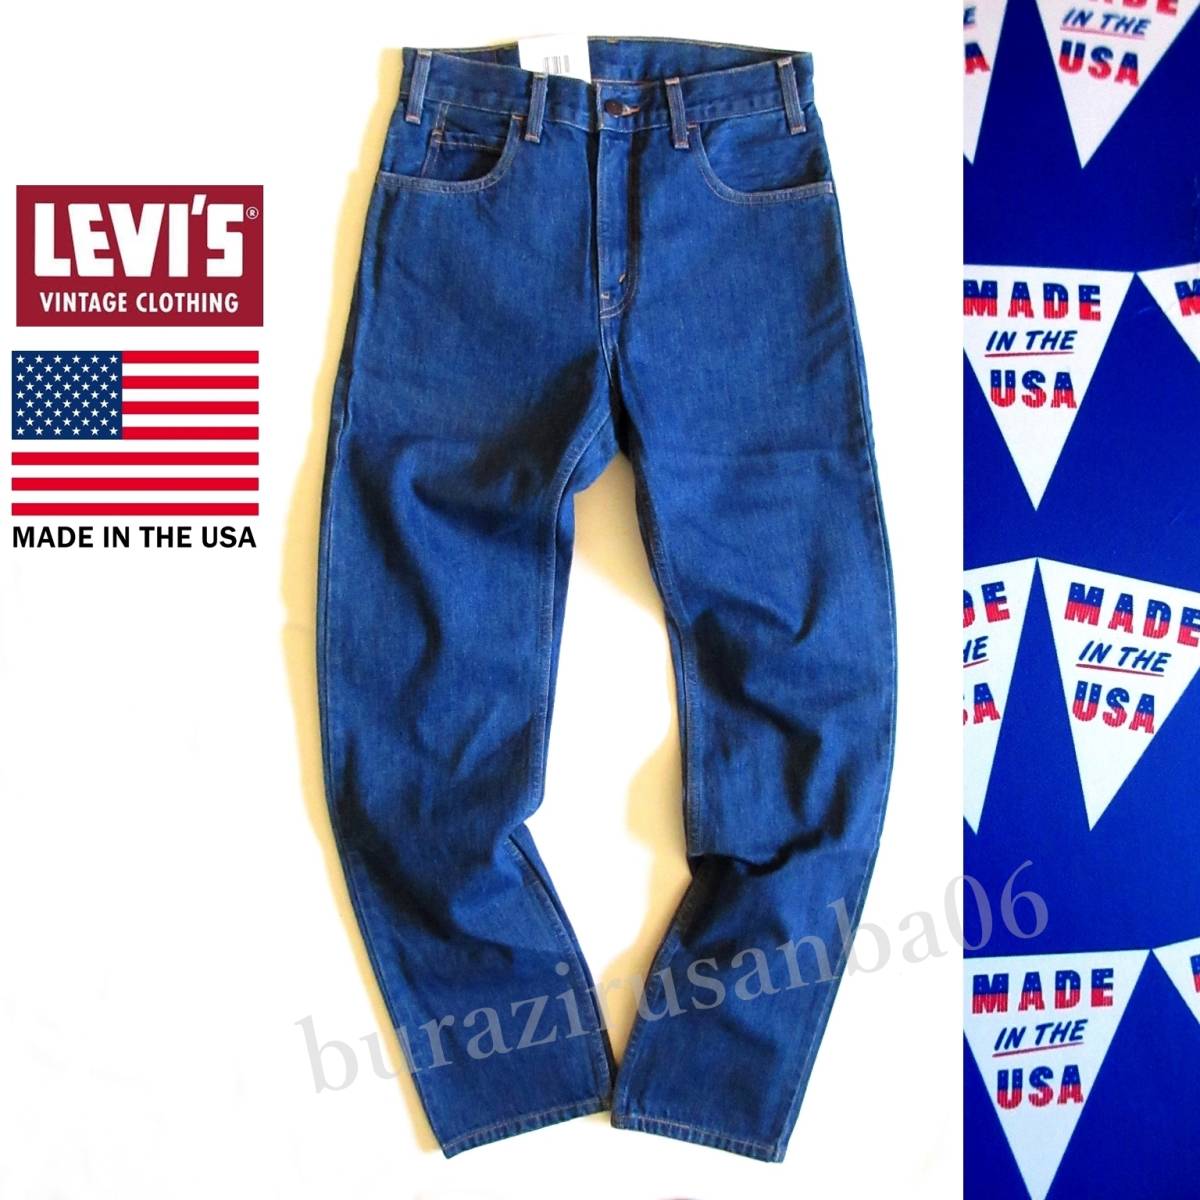 メンズ W28 未使用 リーバイス Levi's Vintage Clothing 615 デニムパンツ ジーンズ 1970年代 復刻 米国製 Made in the USA